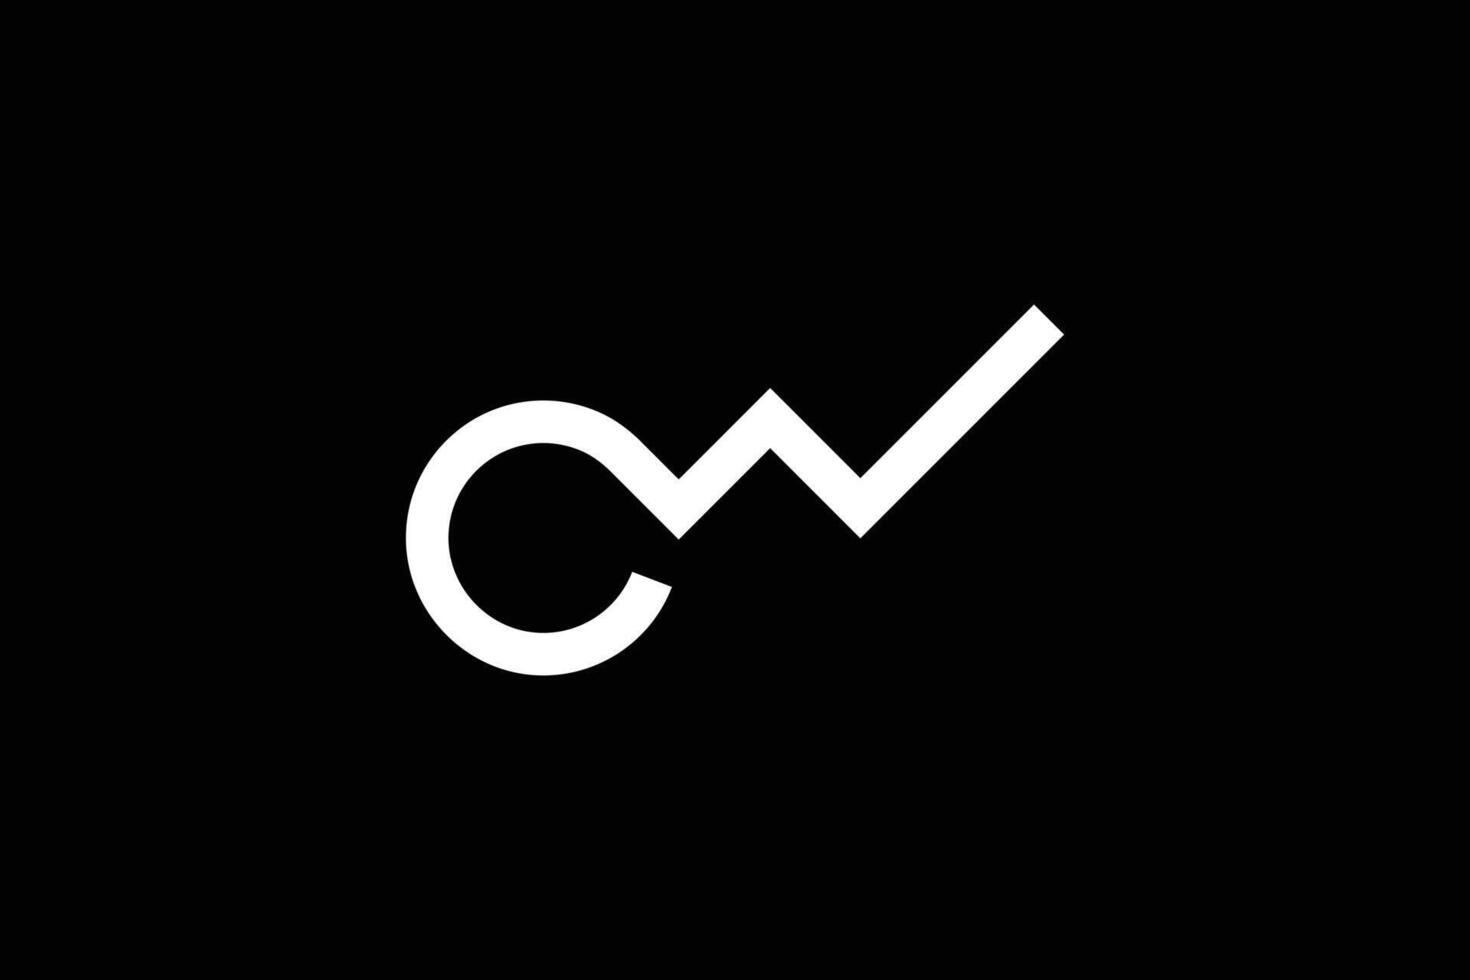 brief cw logo ontwerp sjabloon vector